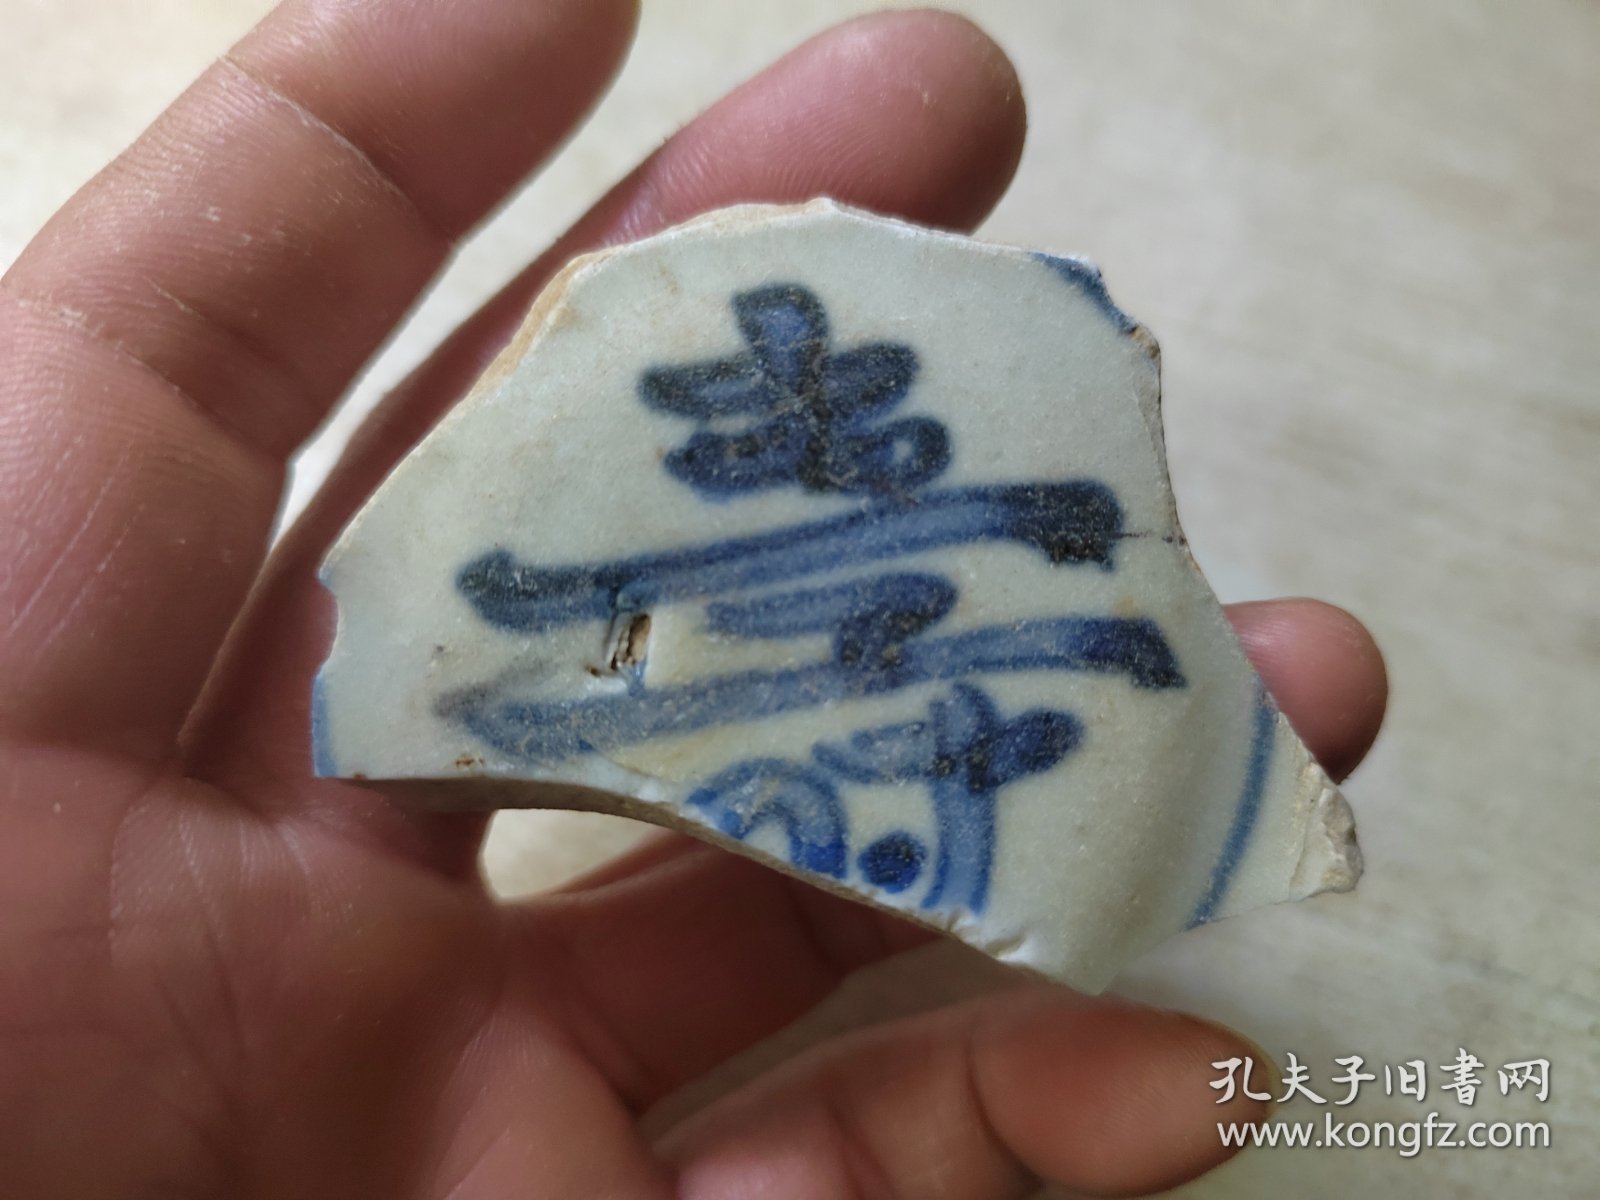 明代 寿字纹青花大碗瓷片标本